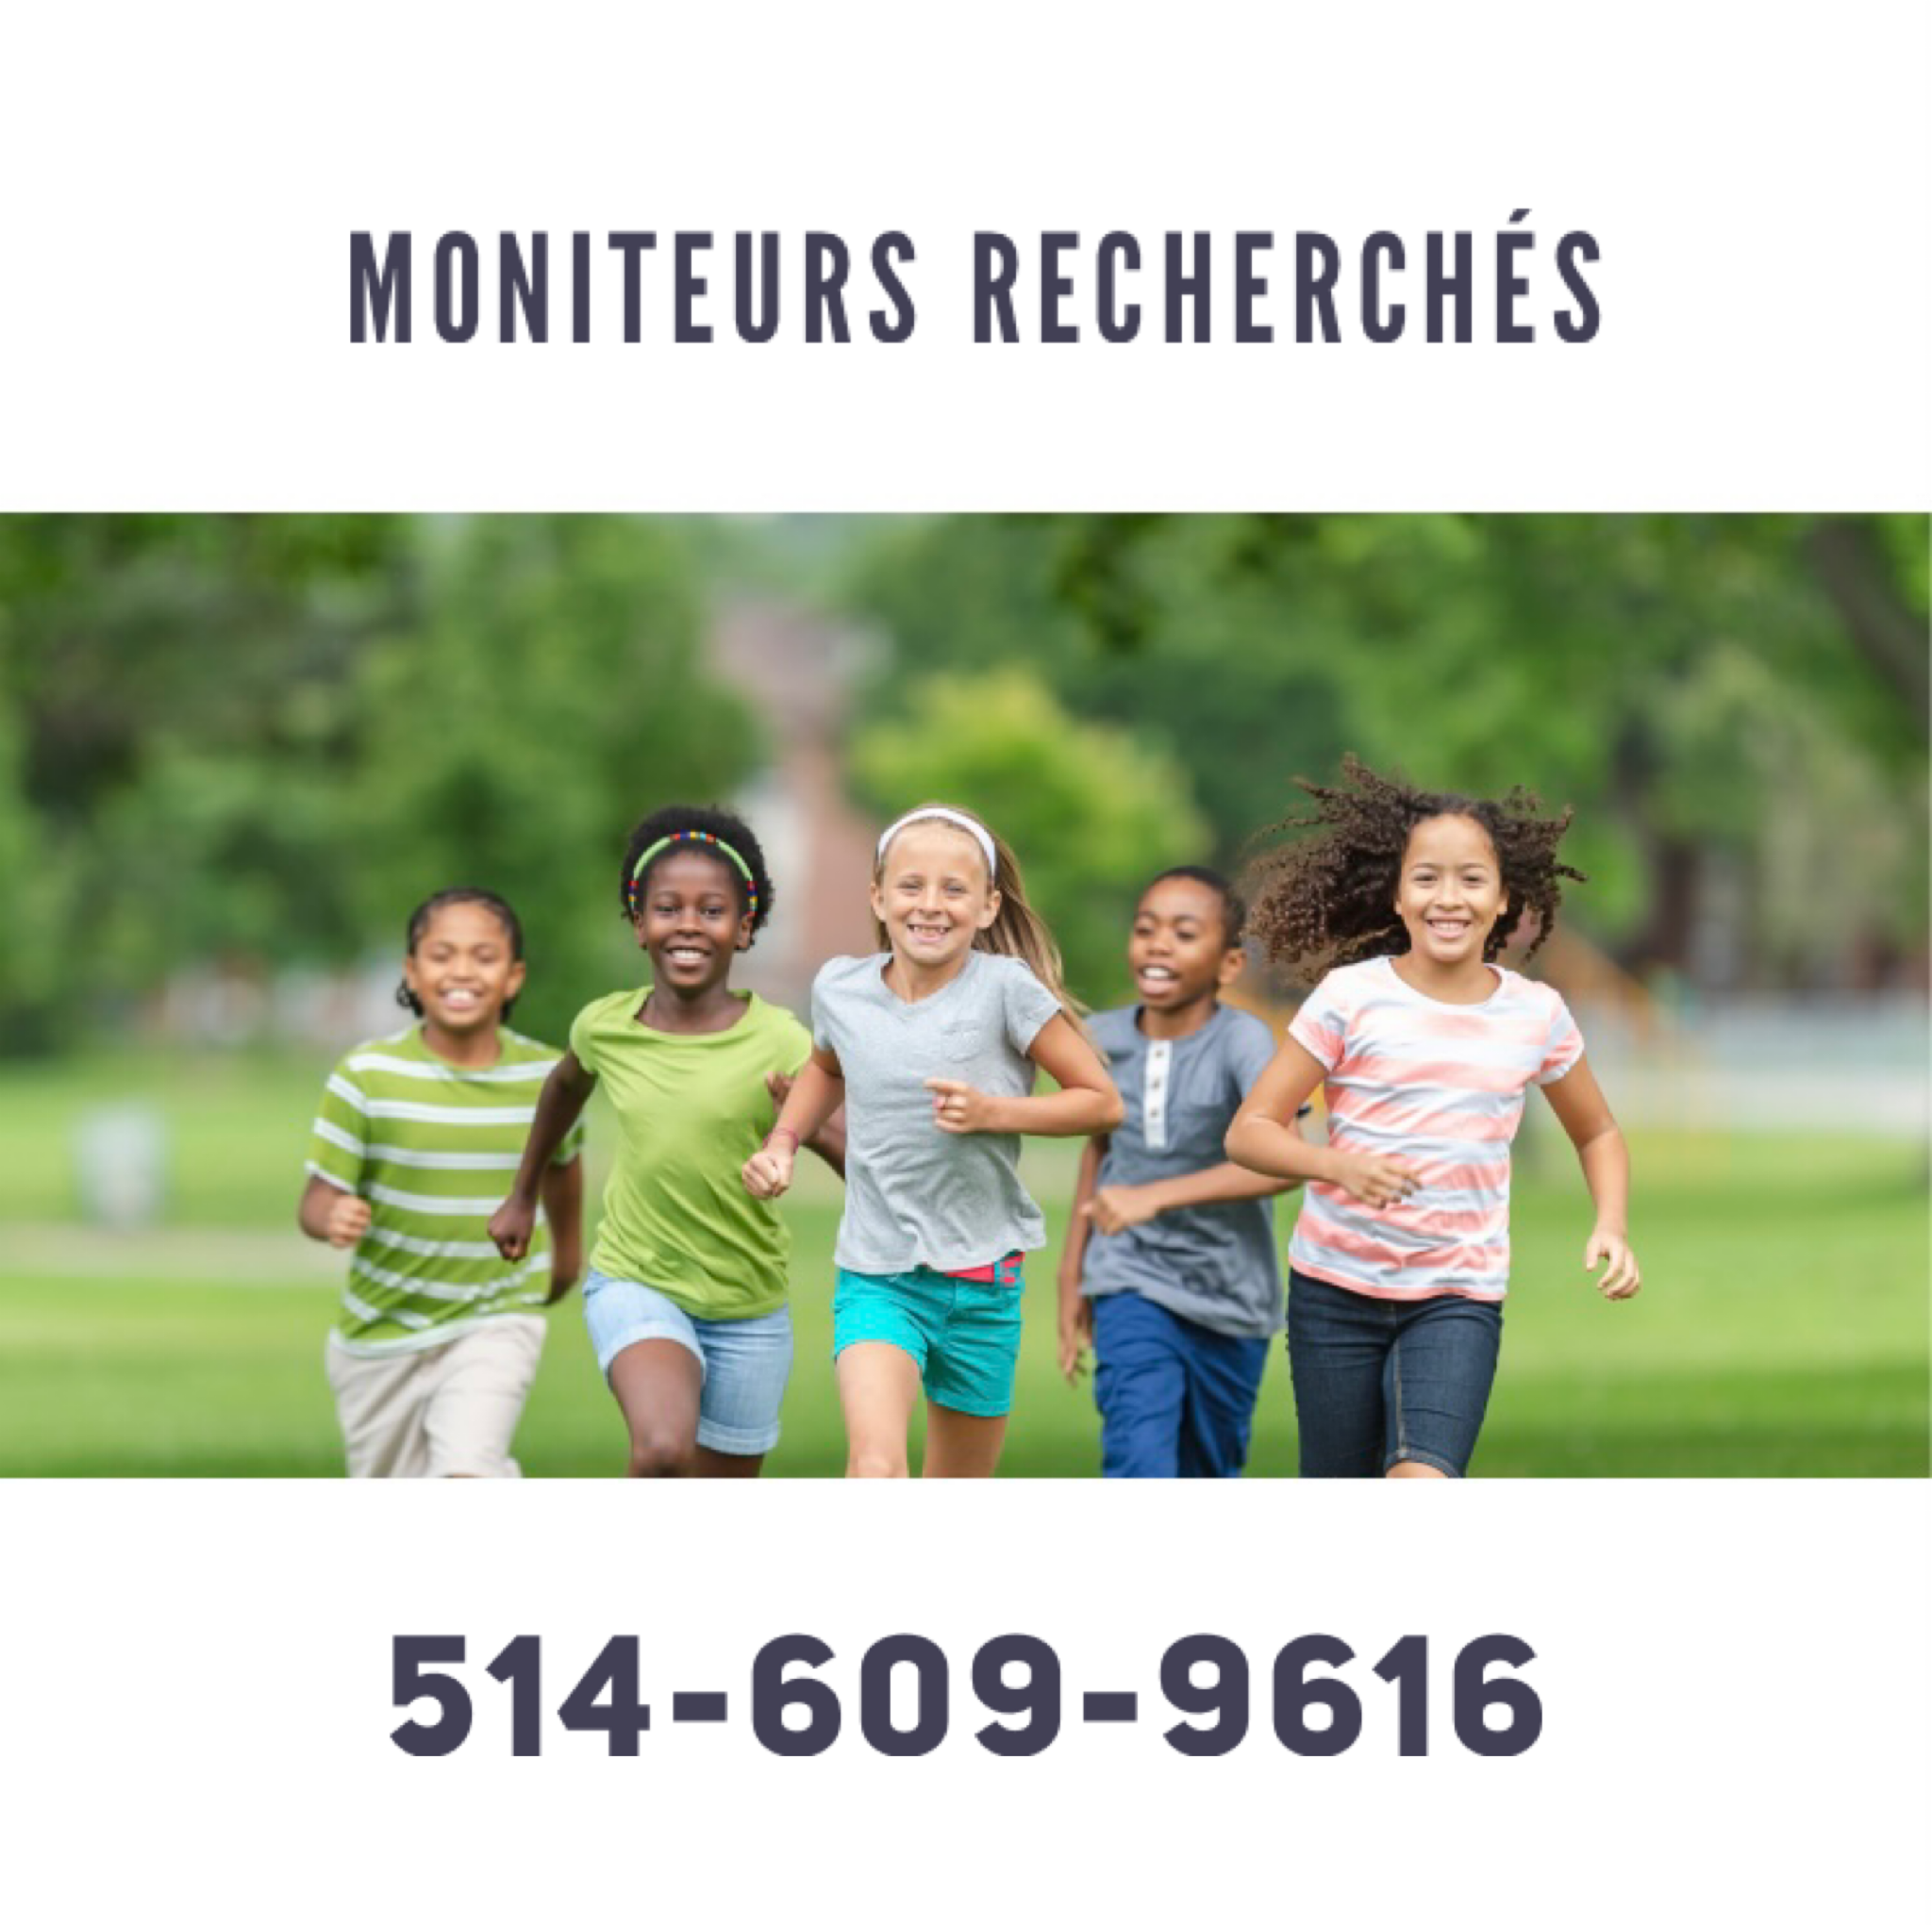 Moniteurs recherchs - 514-609-9616